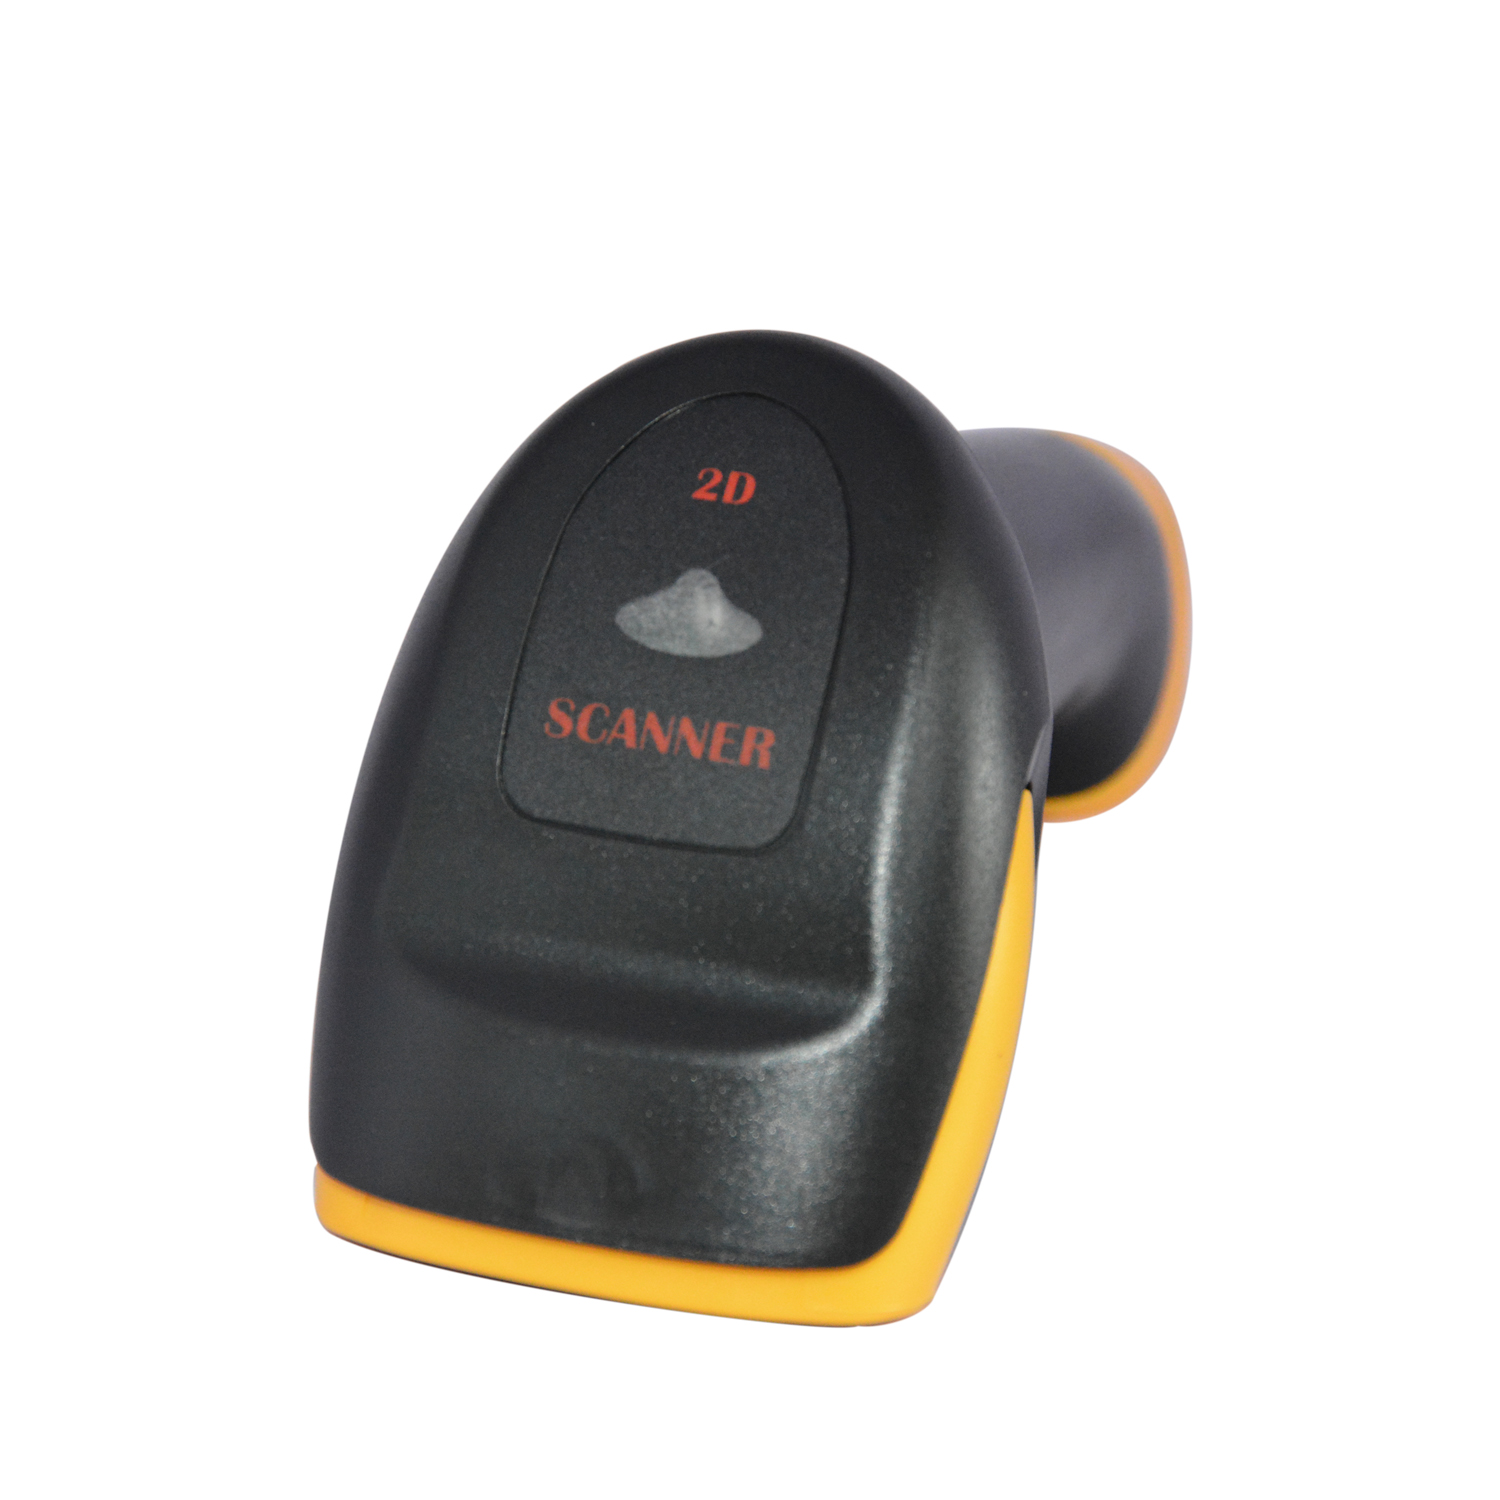 433 MHz RS232 virtueller serieller 2D-Barcode-Handscanner HS-6412